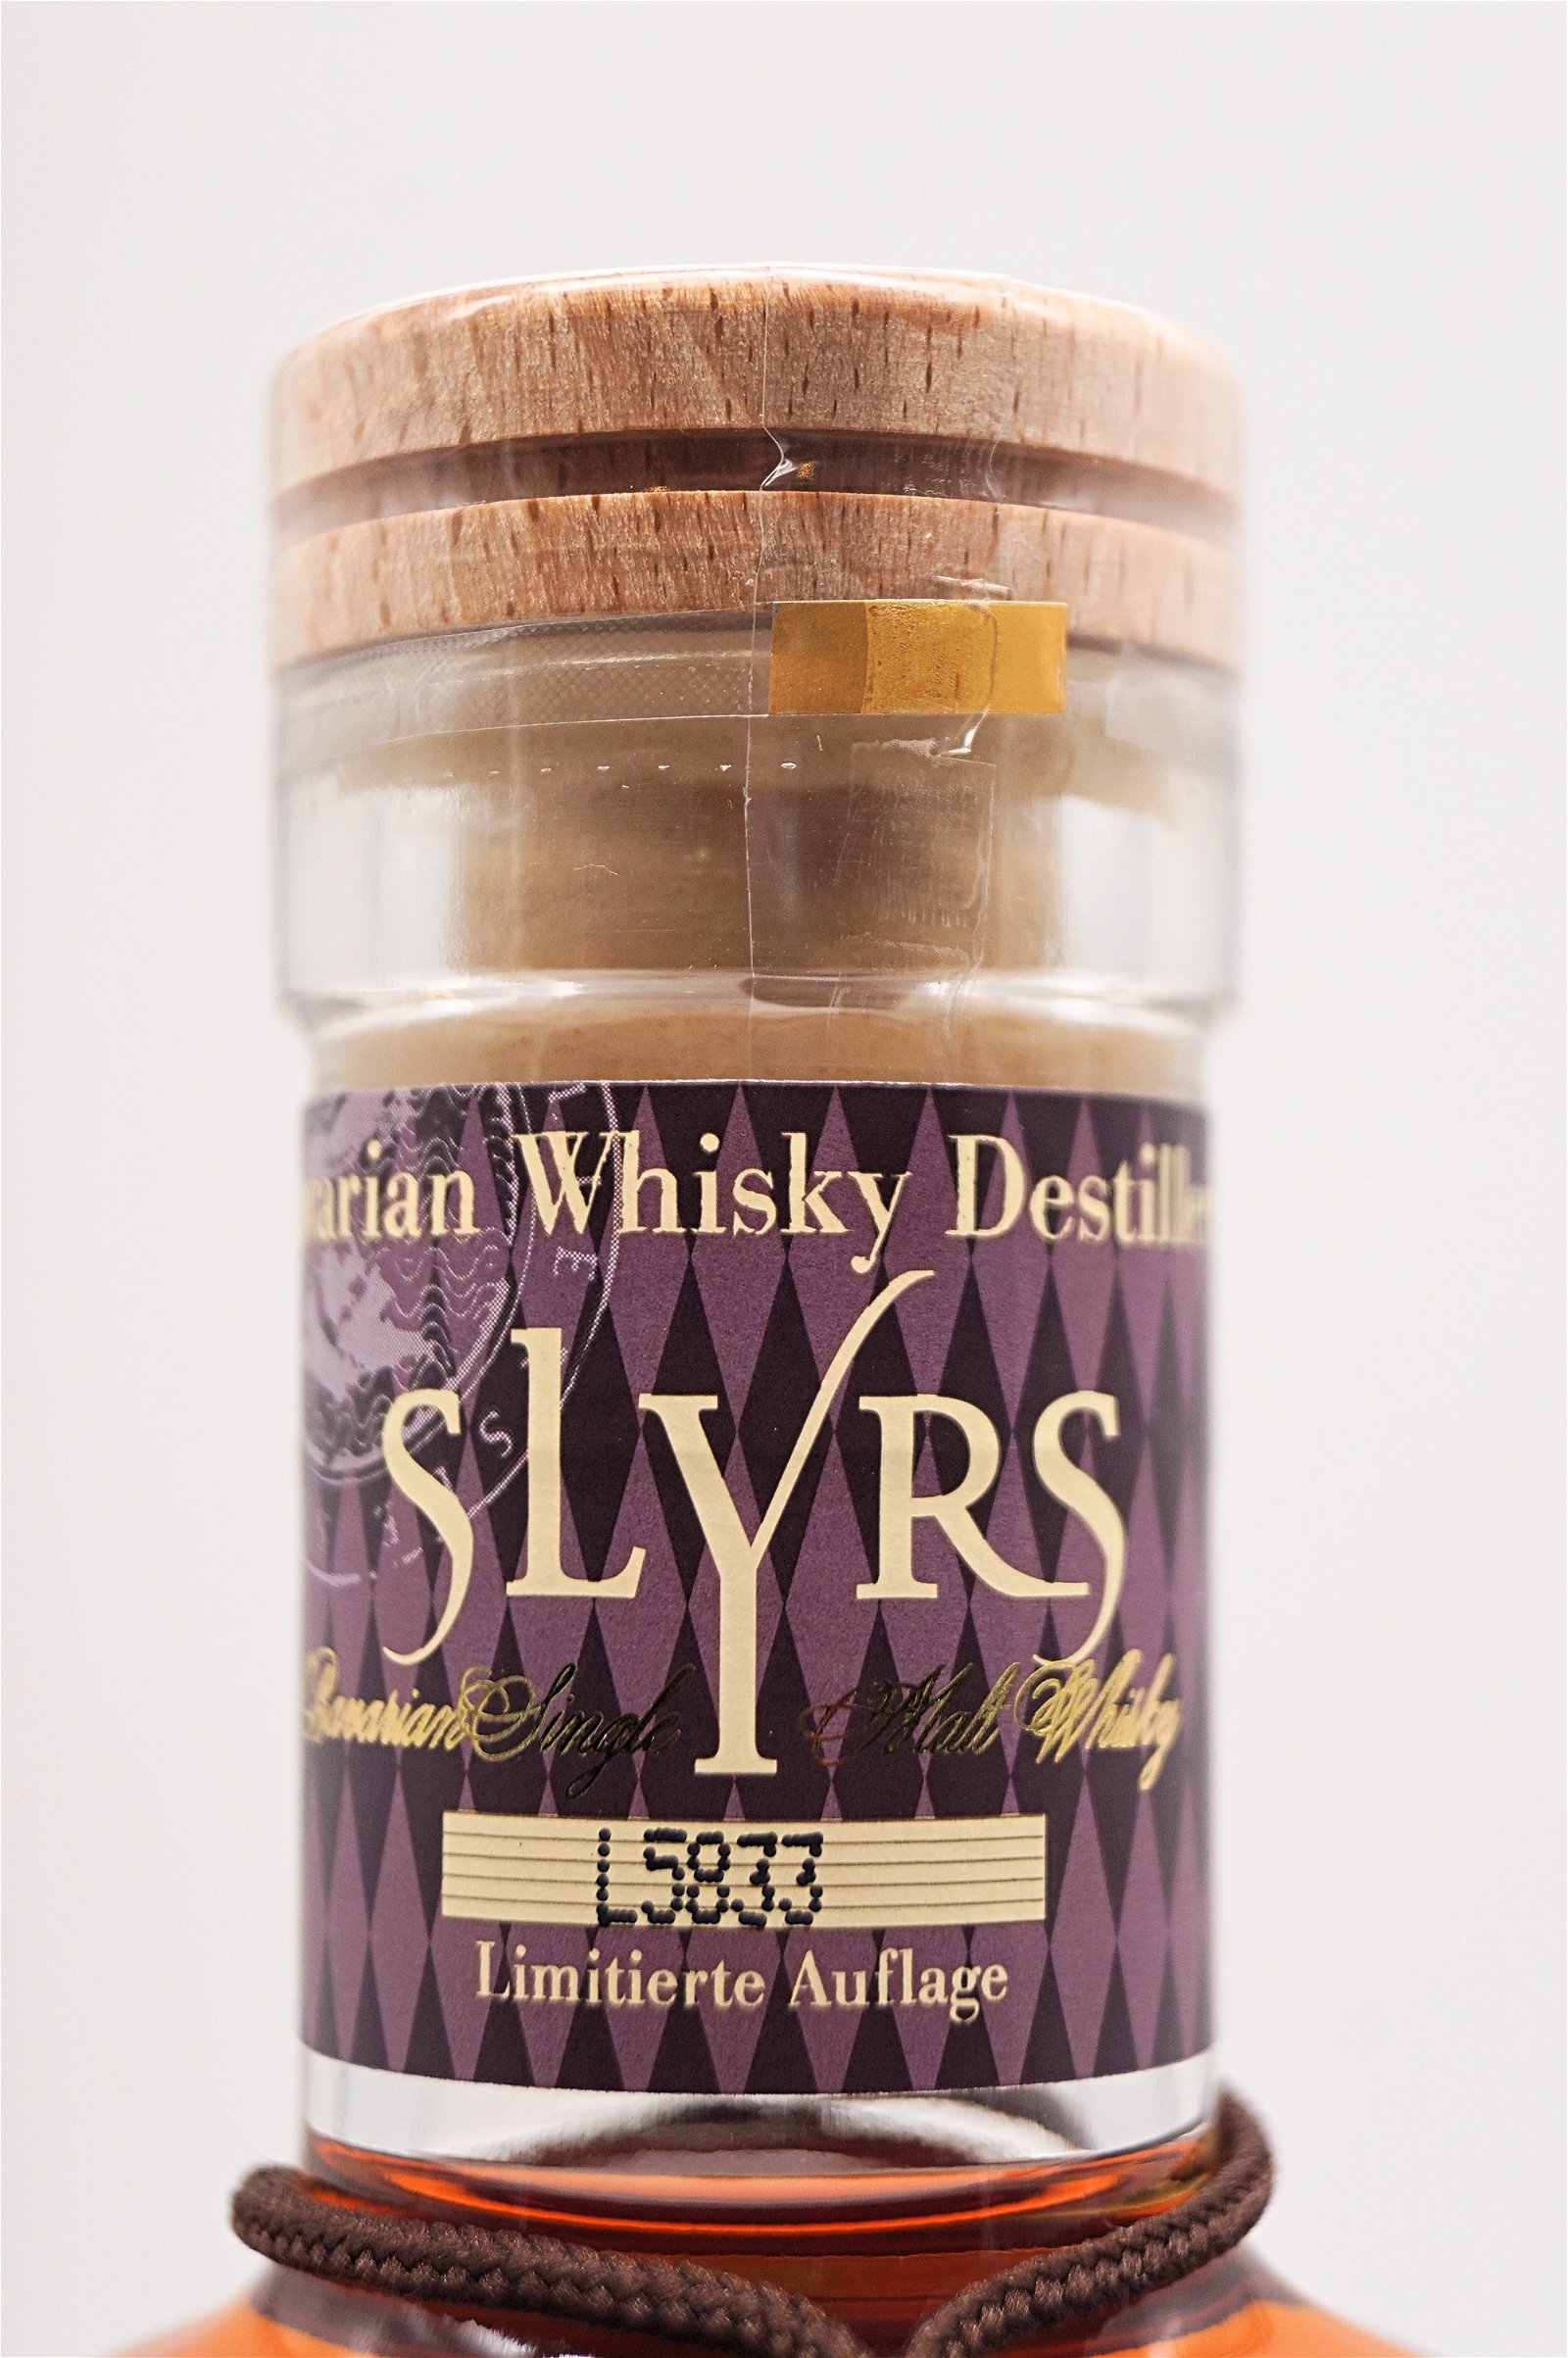 Slyrs Single Malt Whisky Port Cask Finishing